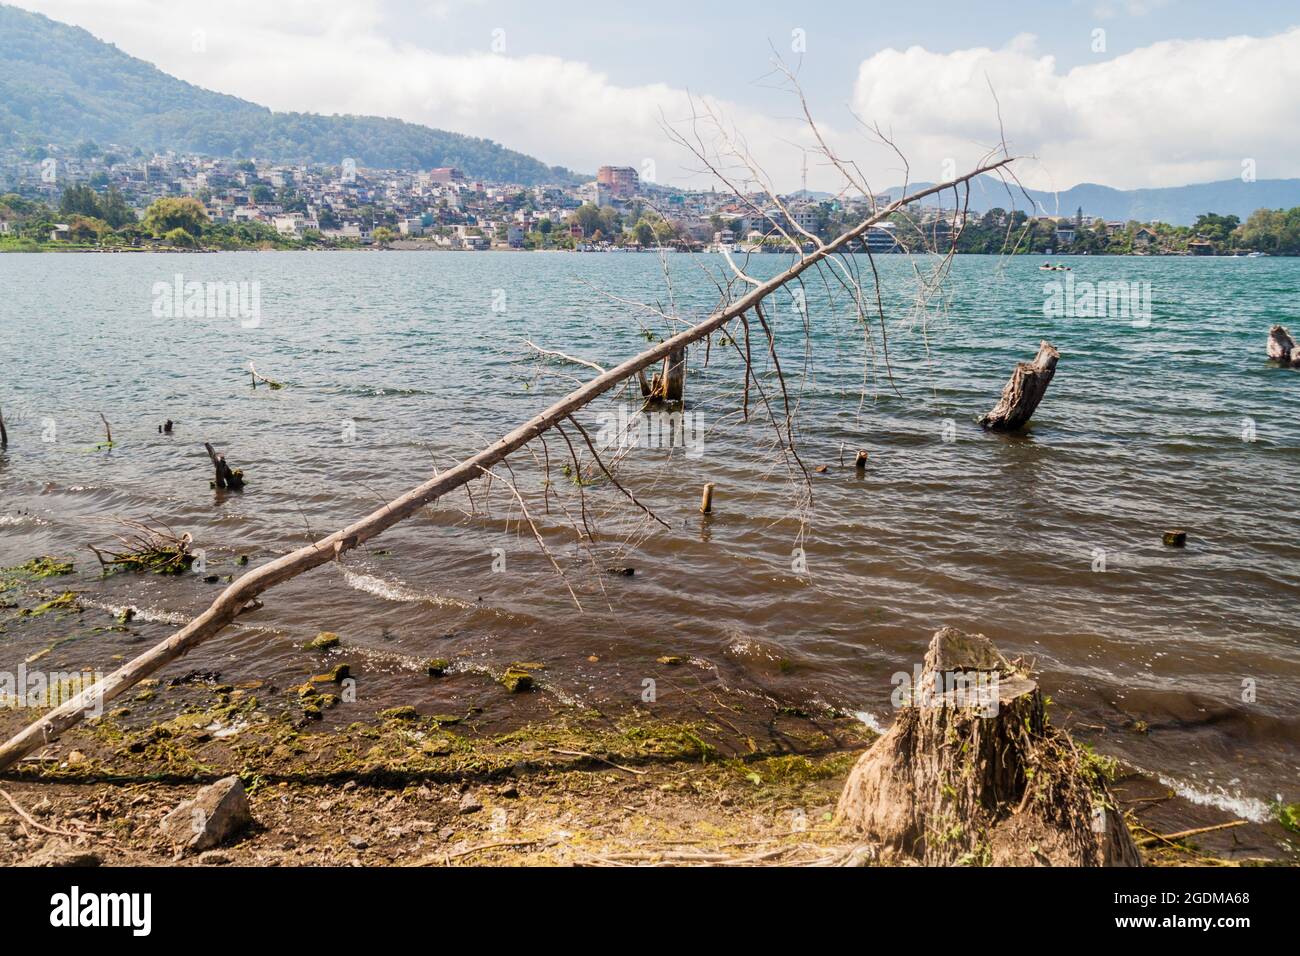 Coast of Atitlan lake, Guatemala. Rising levels of this lake causing submersion of trees. Santiago Atitlan village visible. Stock Photo